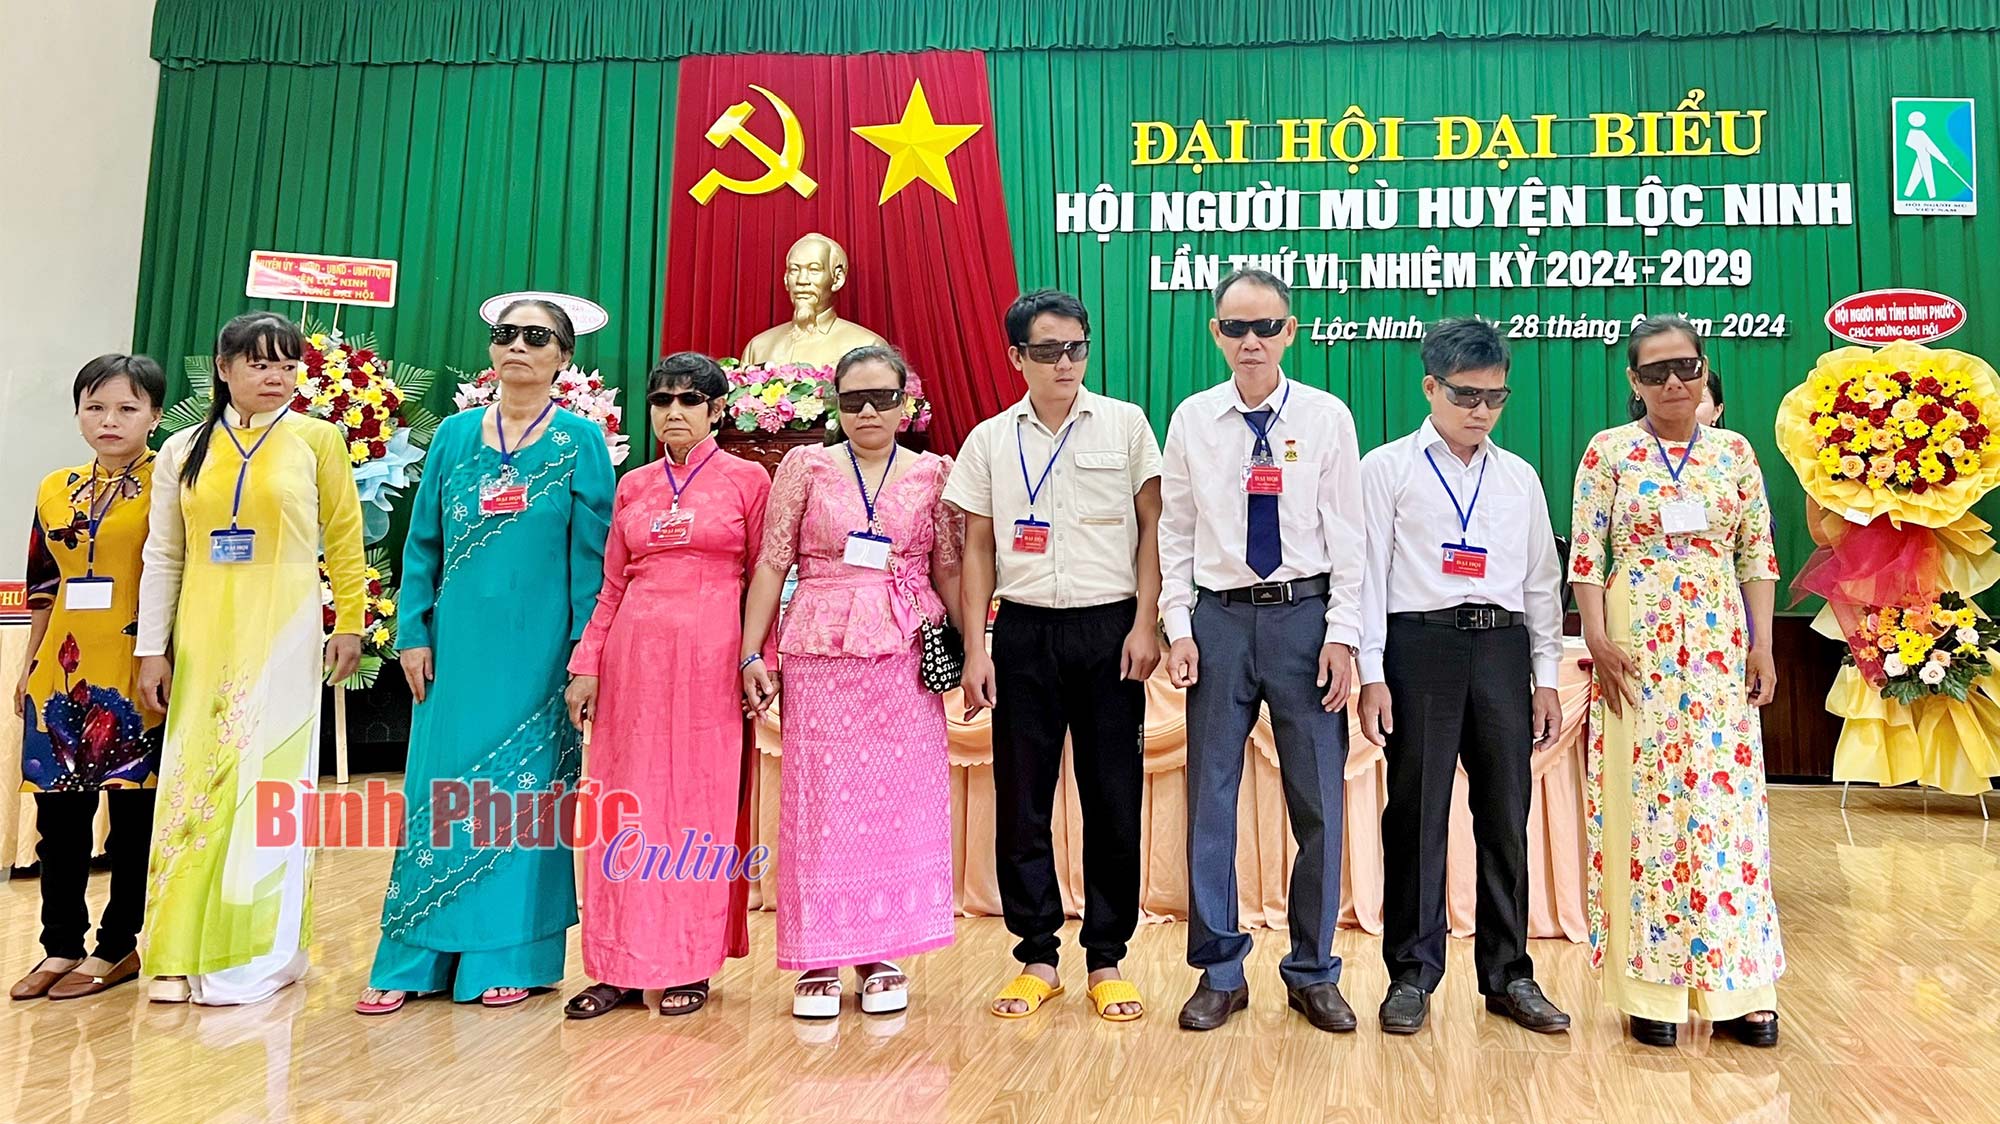 Đại hội đại biểu Hội Người mù huyện Lộc Ninh lần thứ VI, nhiệm kỳ 2024-2029